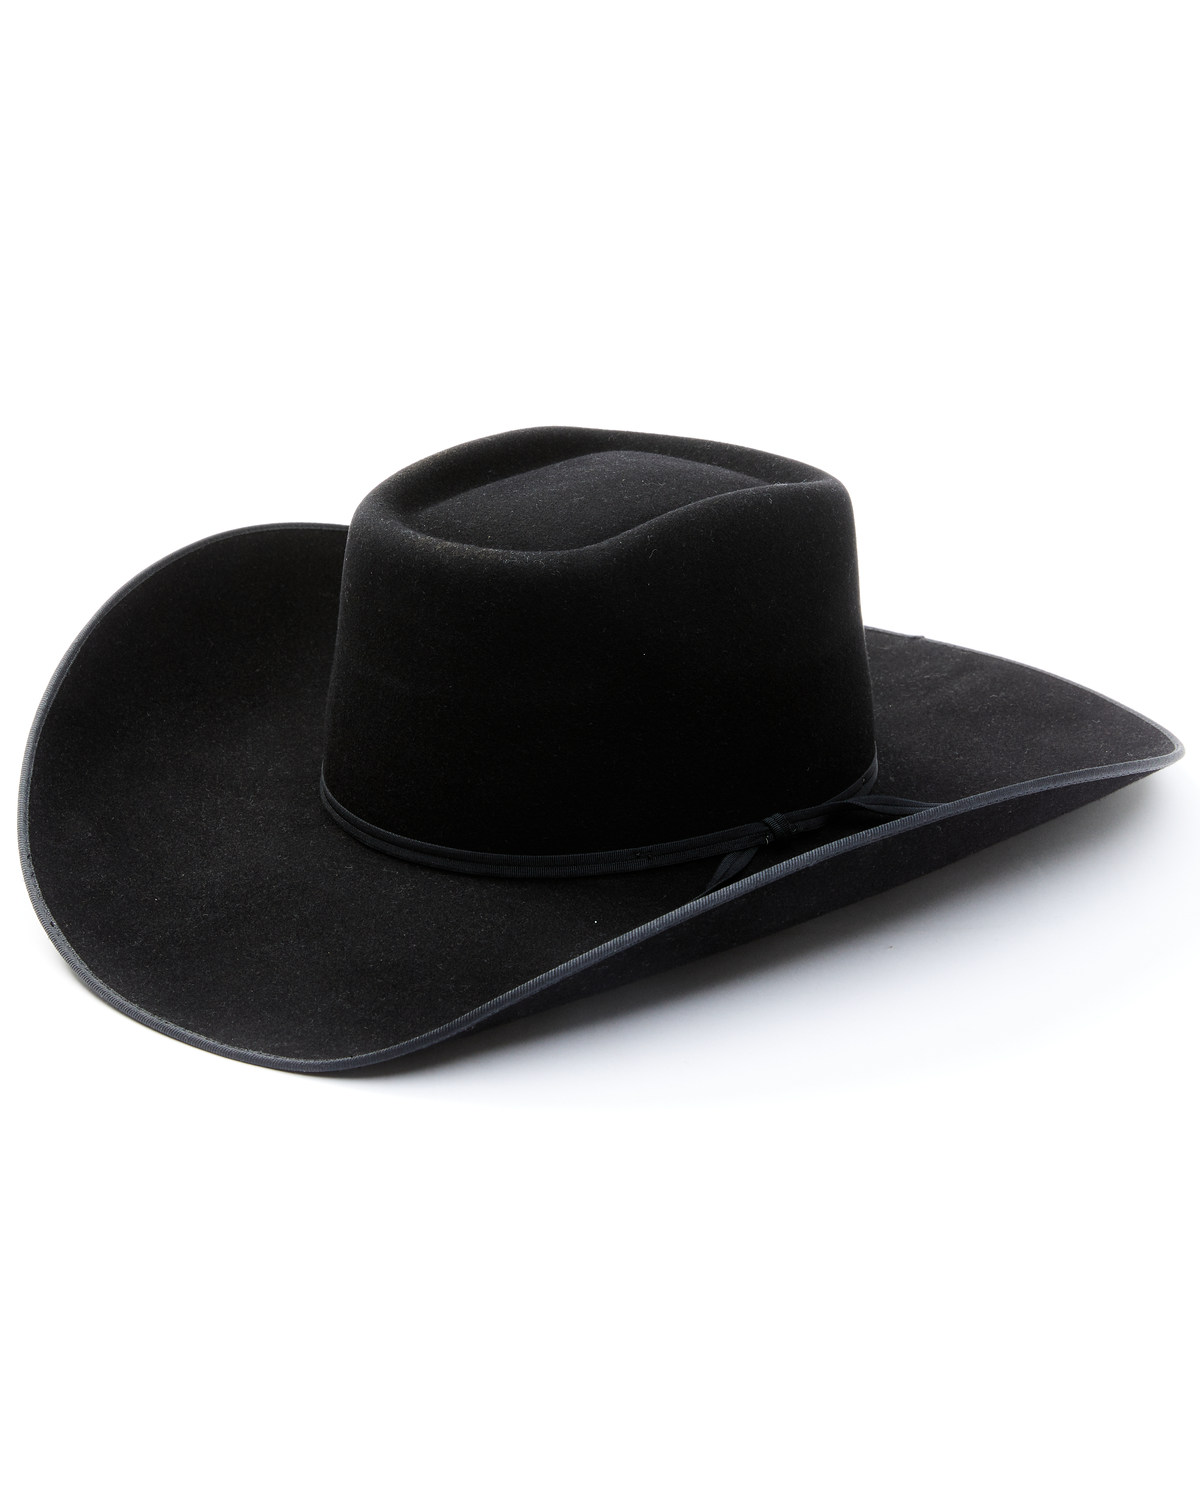 Cody James 6X Felt Cowboy Hat